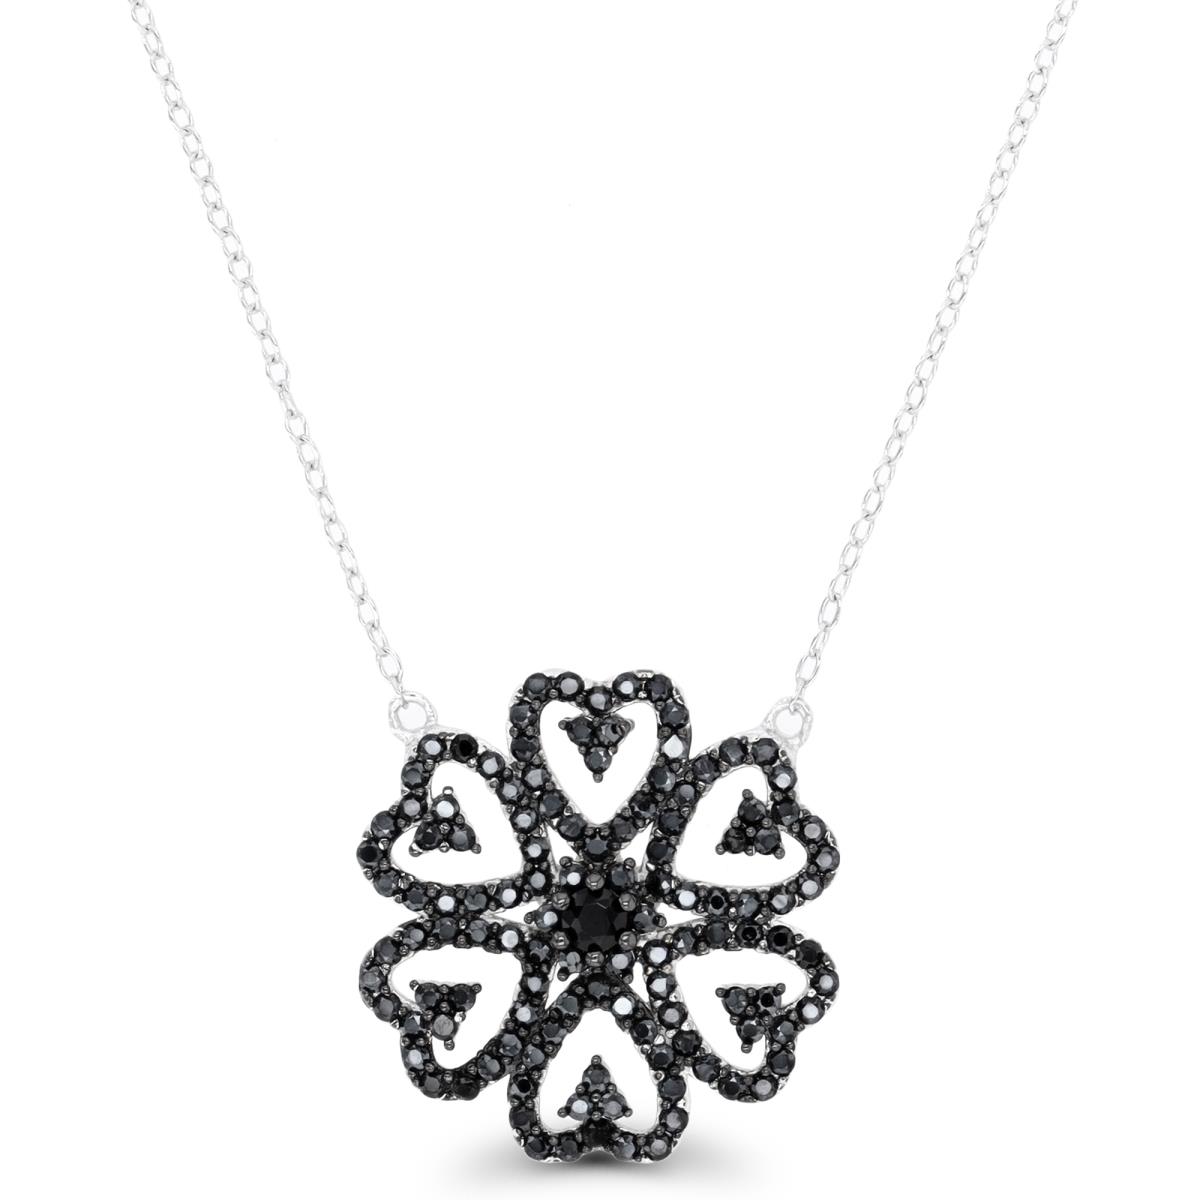 Sterling Silver Rhodium & Black Rnd Black Spinel Flower 18"Necklace